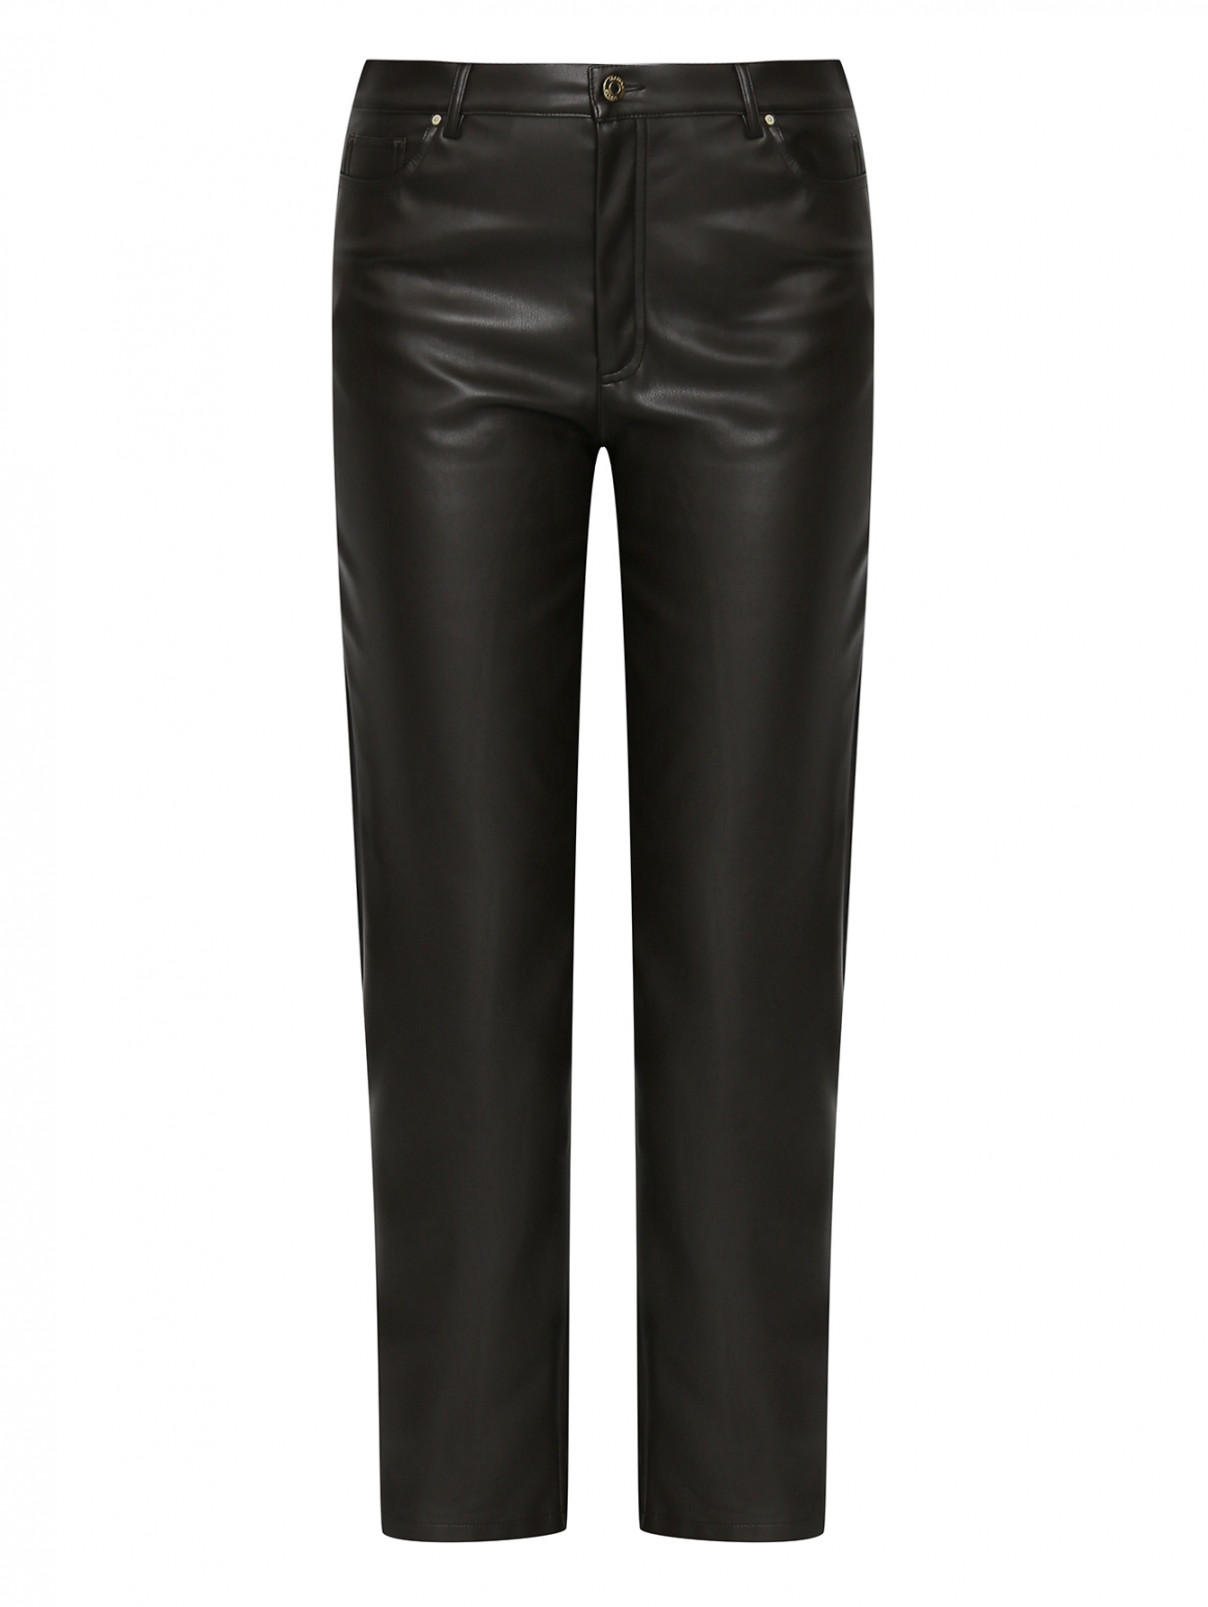 Укороченные брюки из эко-кожи Marina Rinaldi  –  Общий вид  – Цвет:  Коричневый